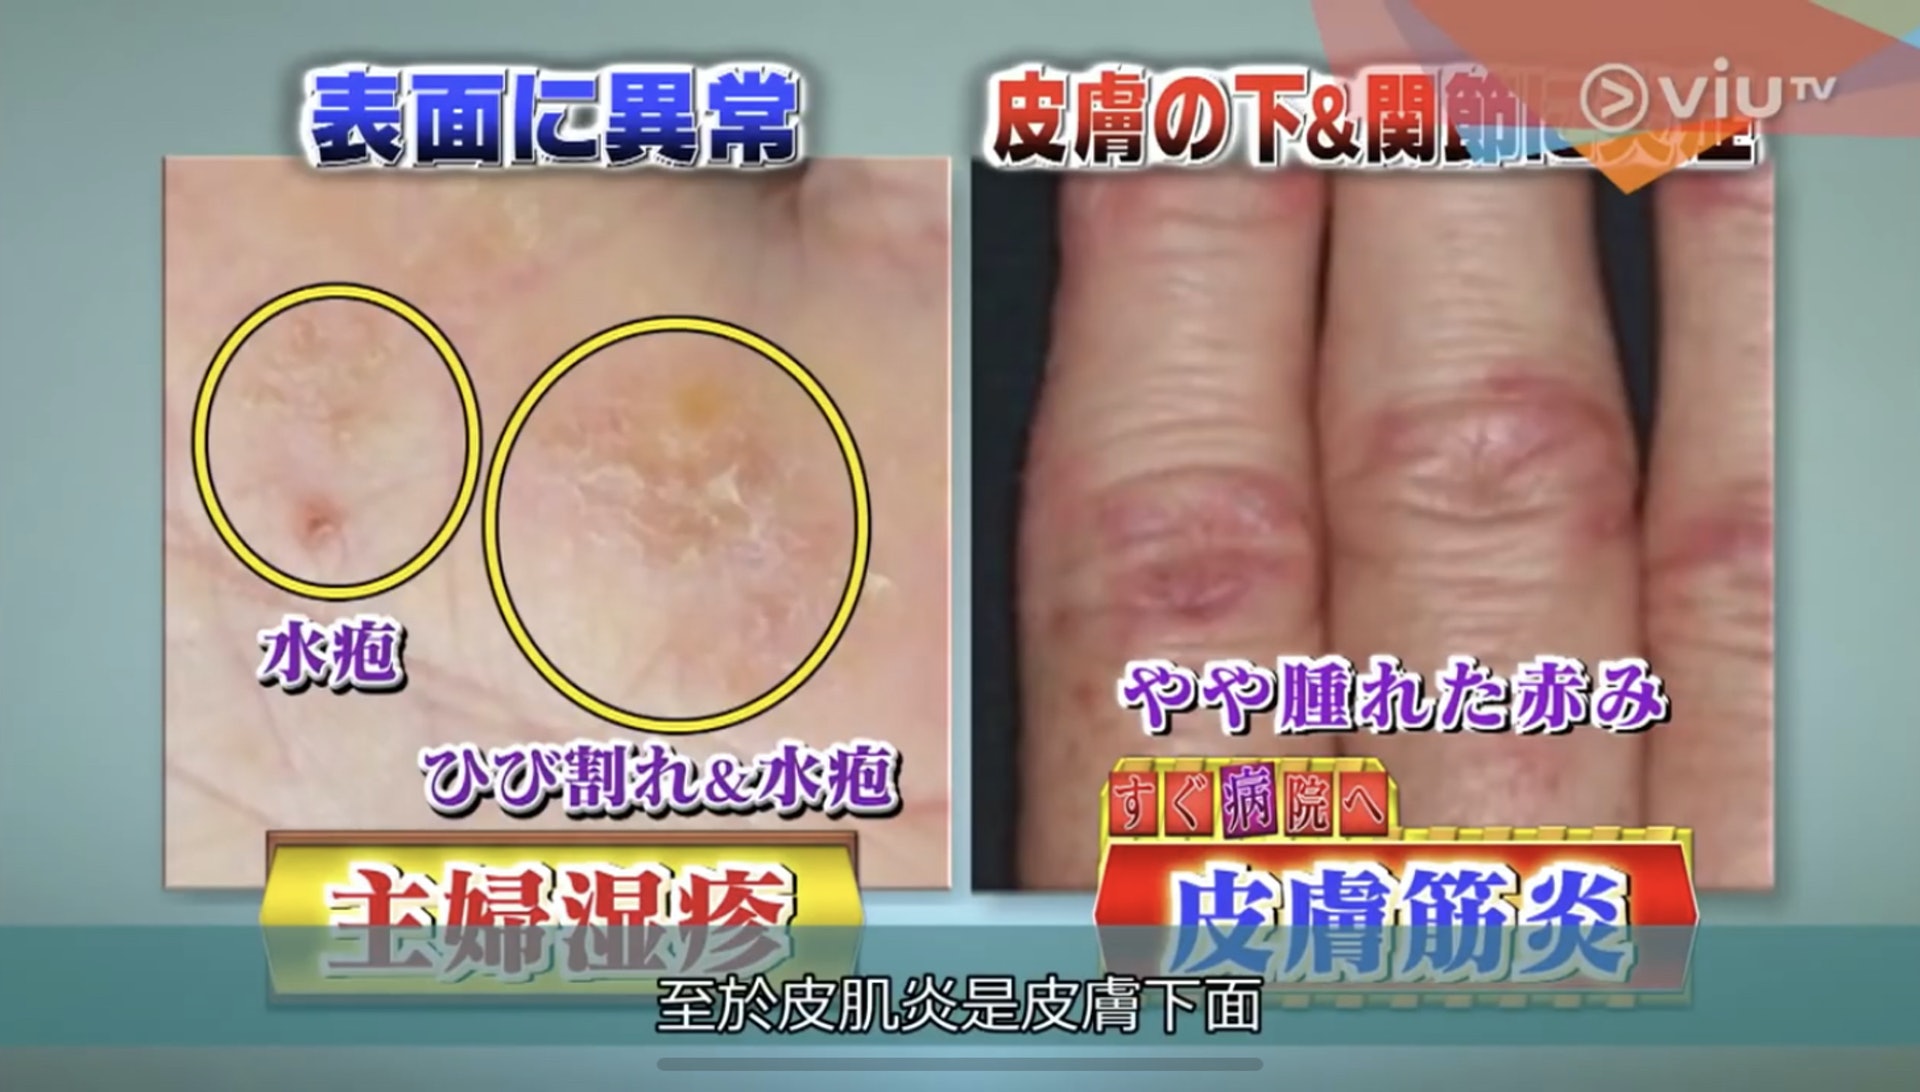 乾燥或濕疹主要會在皮膚表面造成症狀，皮肌炎導致的紅腫則是在皮膚下面。（Viu TV《恐怖醫學》影片截圖）